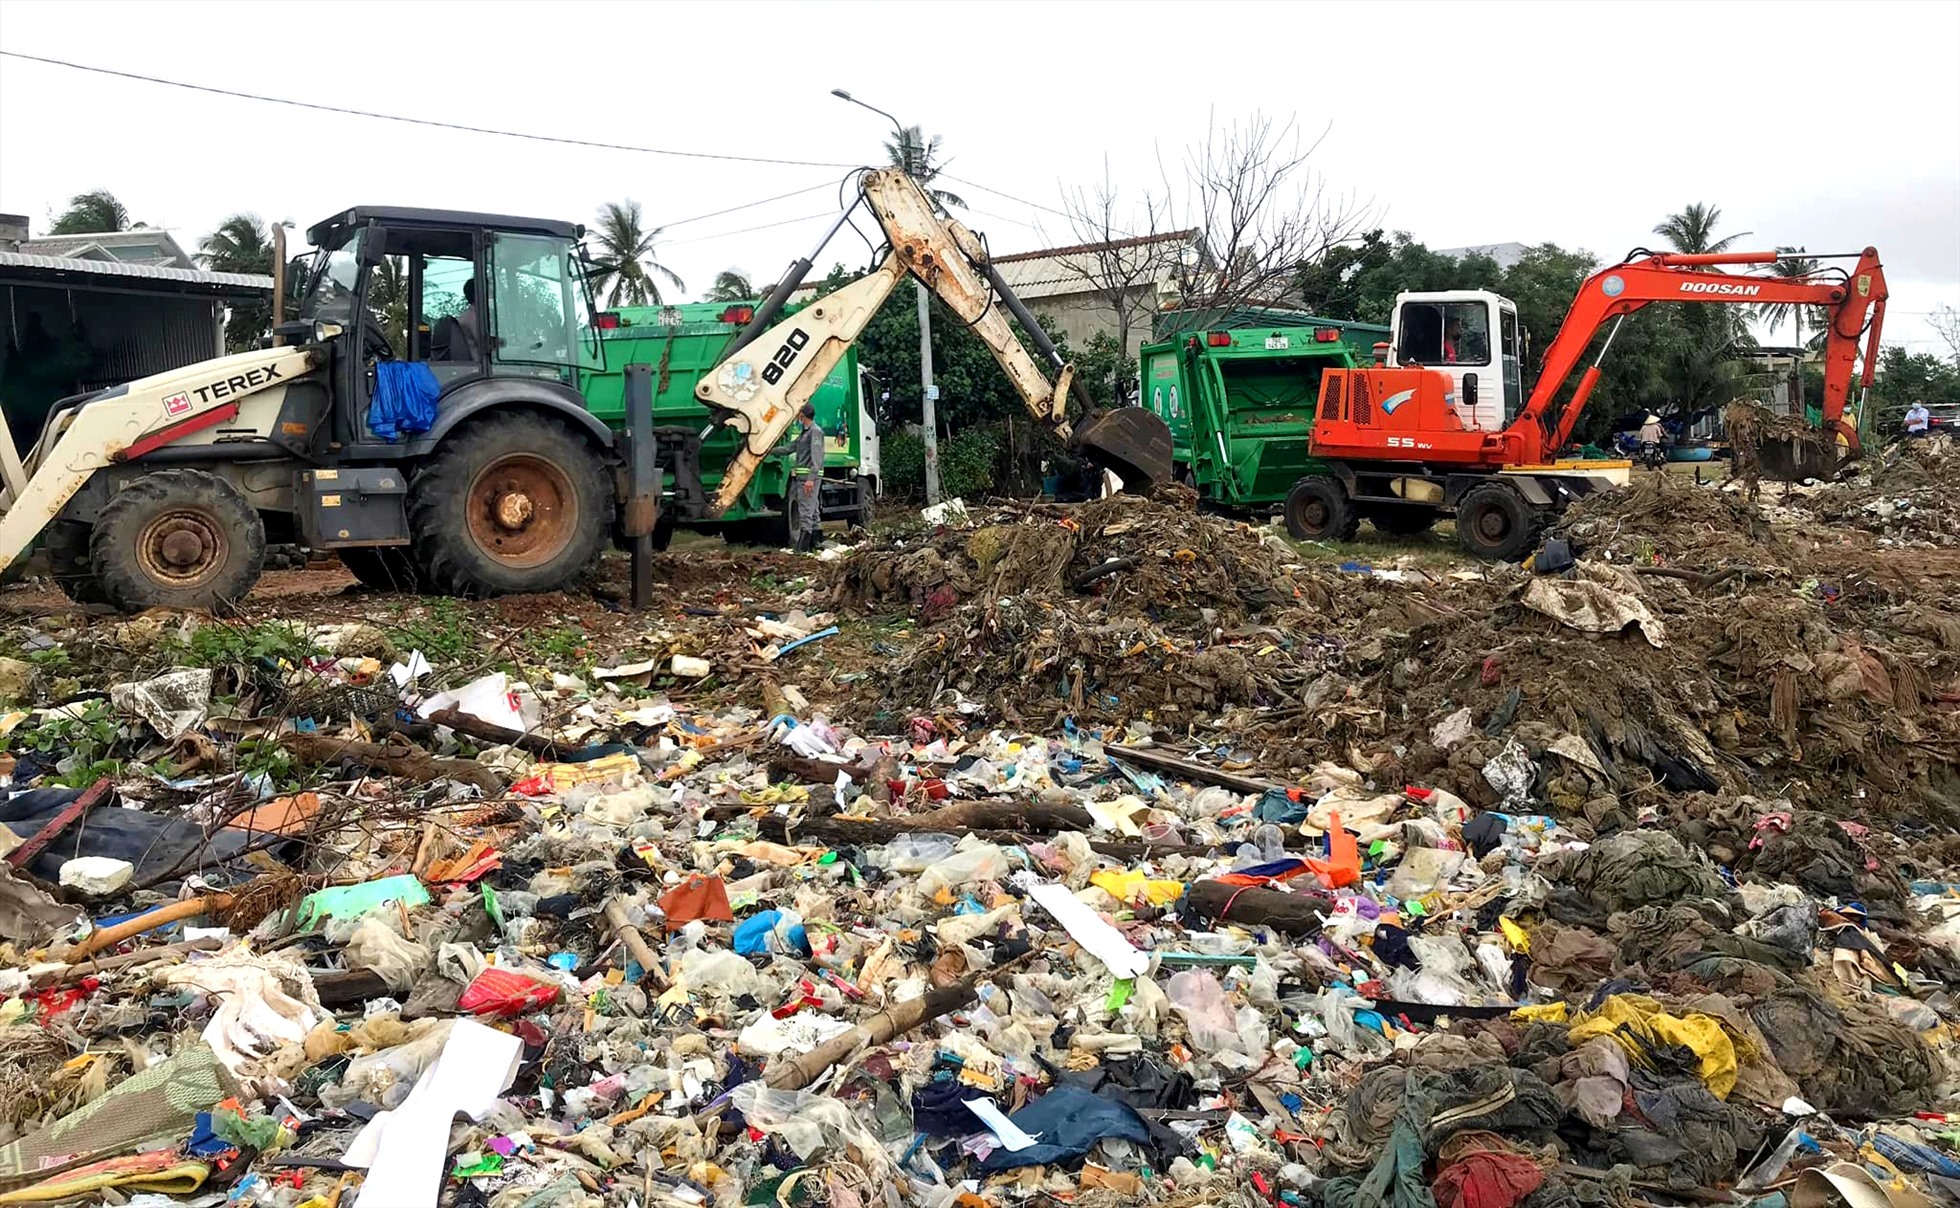 Hằng năm, chính quyền địa phương và các tổ chức thiện nguyện cũng thường xuyên mở các đợt ra quân dọn rác, làm sạch bãi biển An Vĩnh, nhưng tình trạng rác thải ở đây vẫn tồn tại dai dẵng.